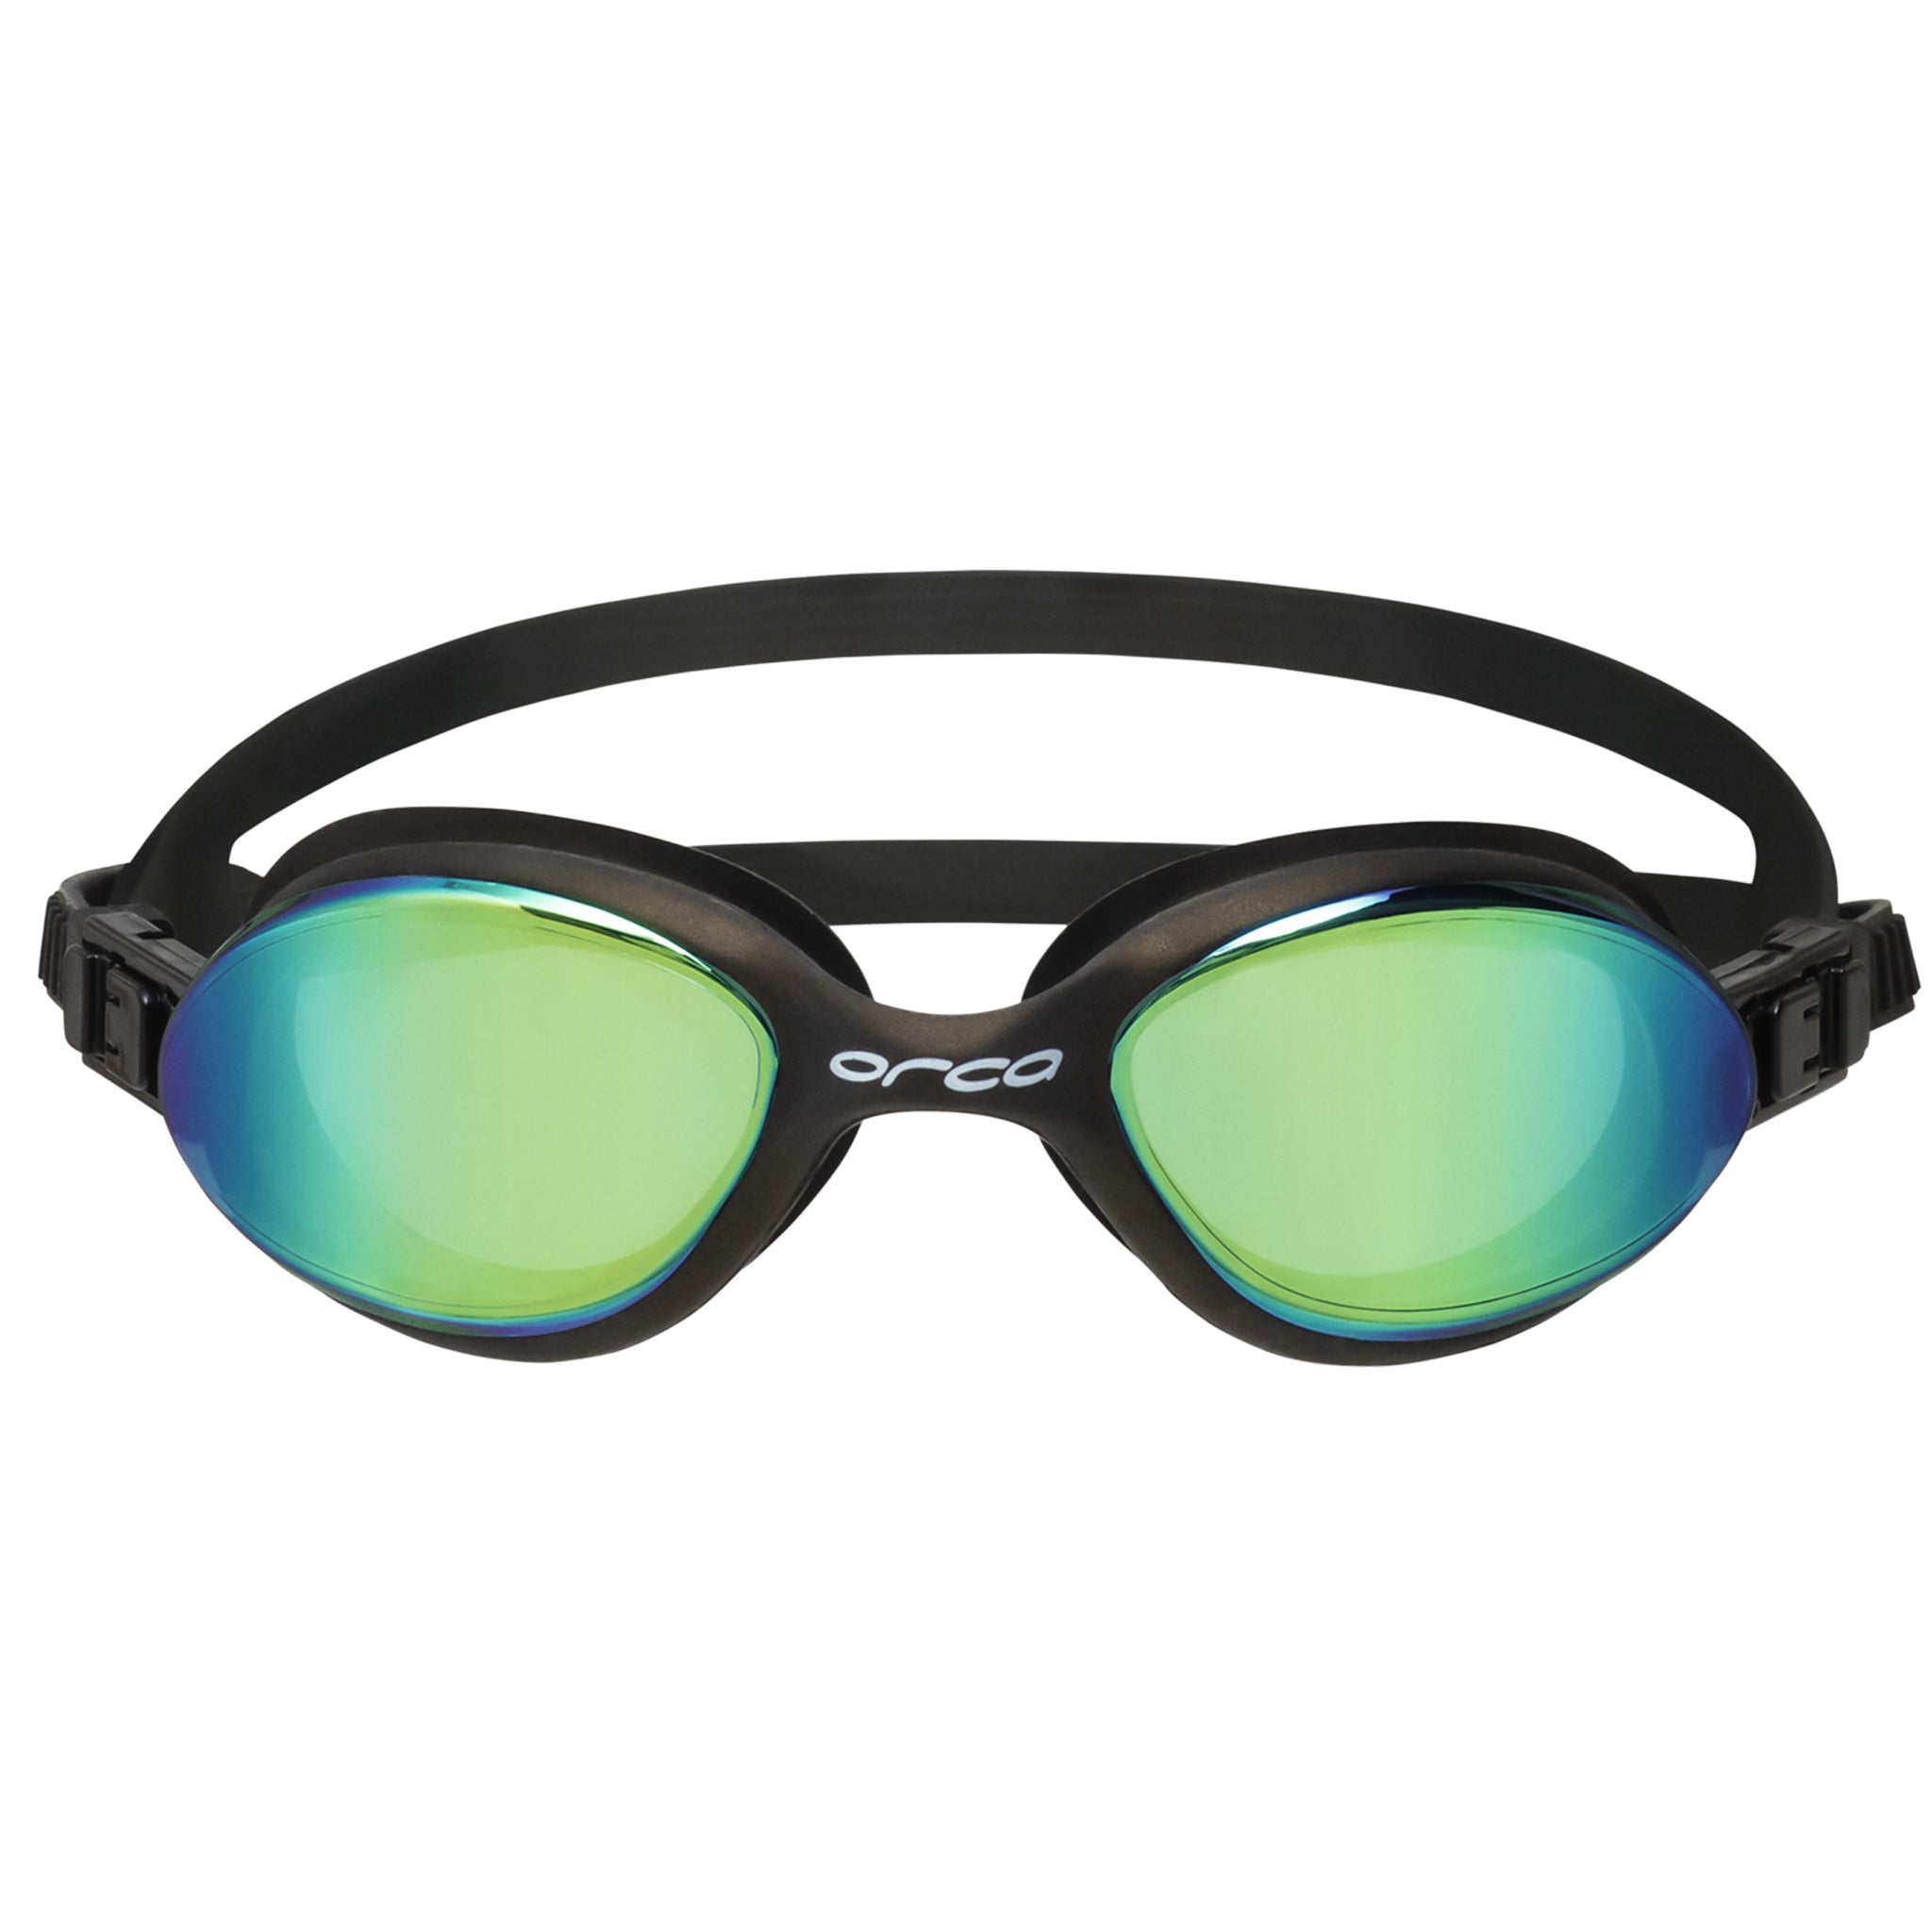 Orca Killa 180 Swimming Goggles with Mirrored Lenses | Black